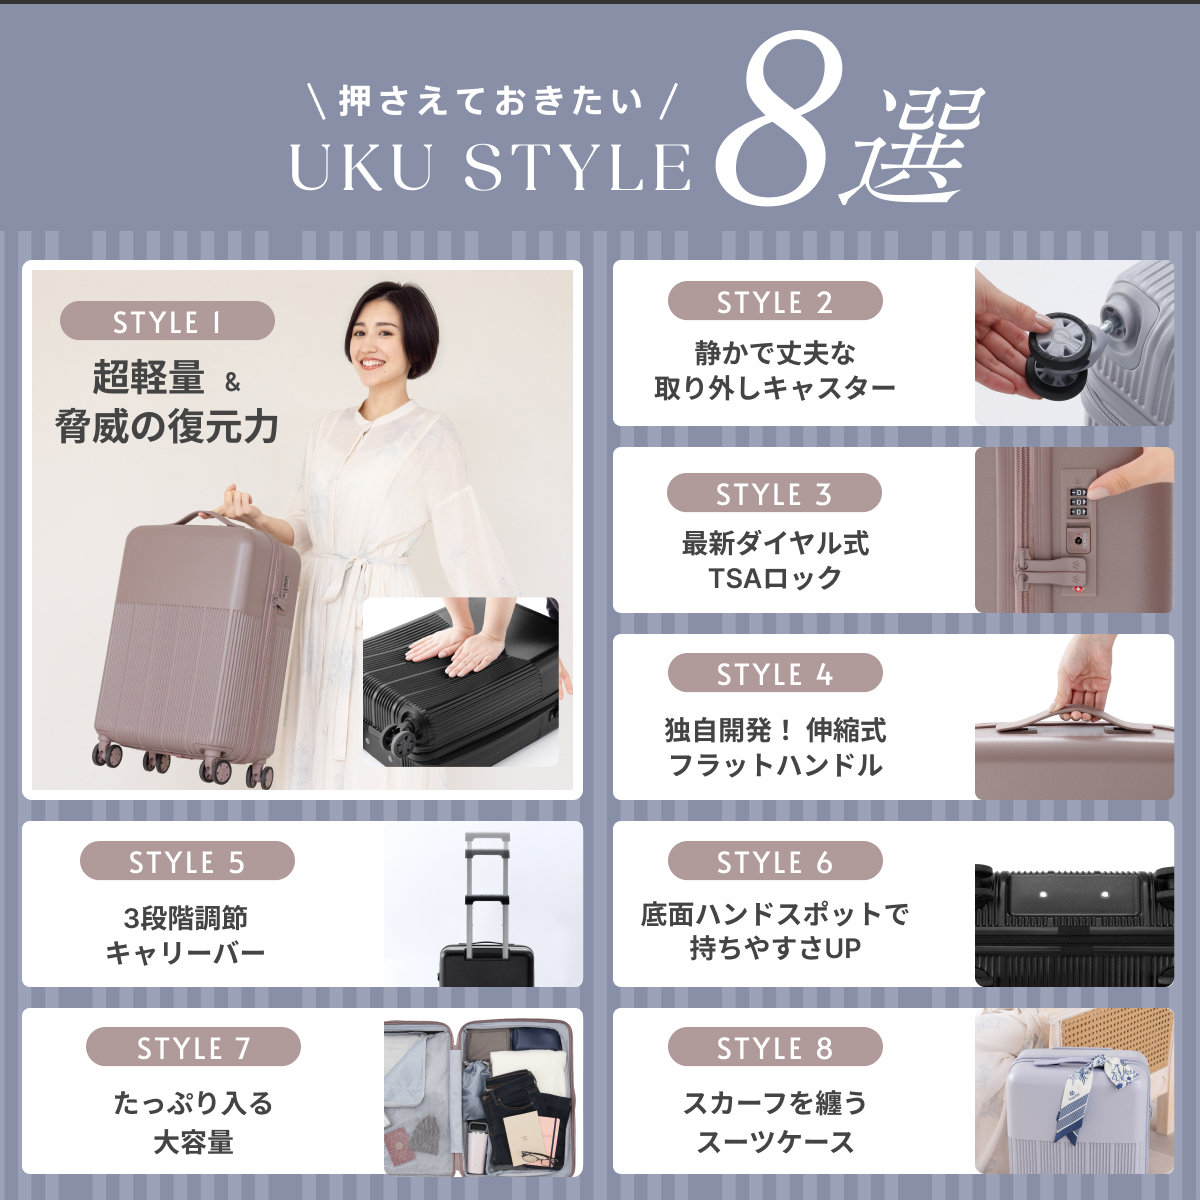 koguMi スーツケース UKU Lサイズ RPO素材 超軽量3.7kg 日本企業 キャリーケース Lサイズ 高機能 高品質 大容量  超静音キャスターファスナー TSA008ロック